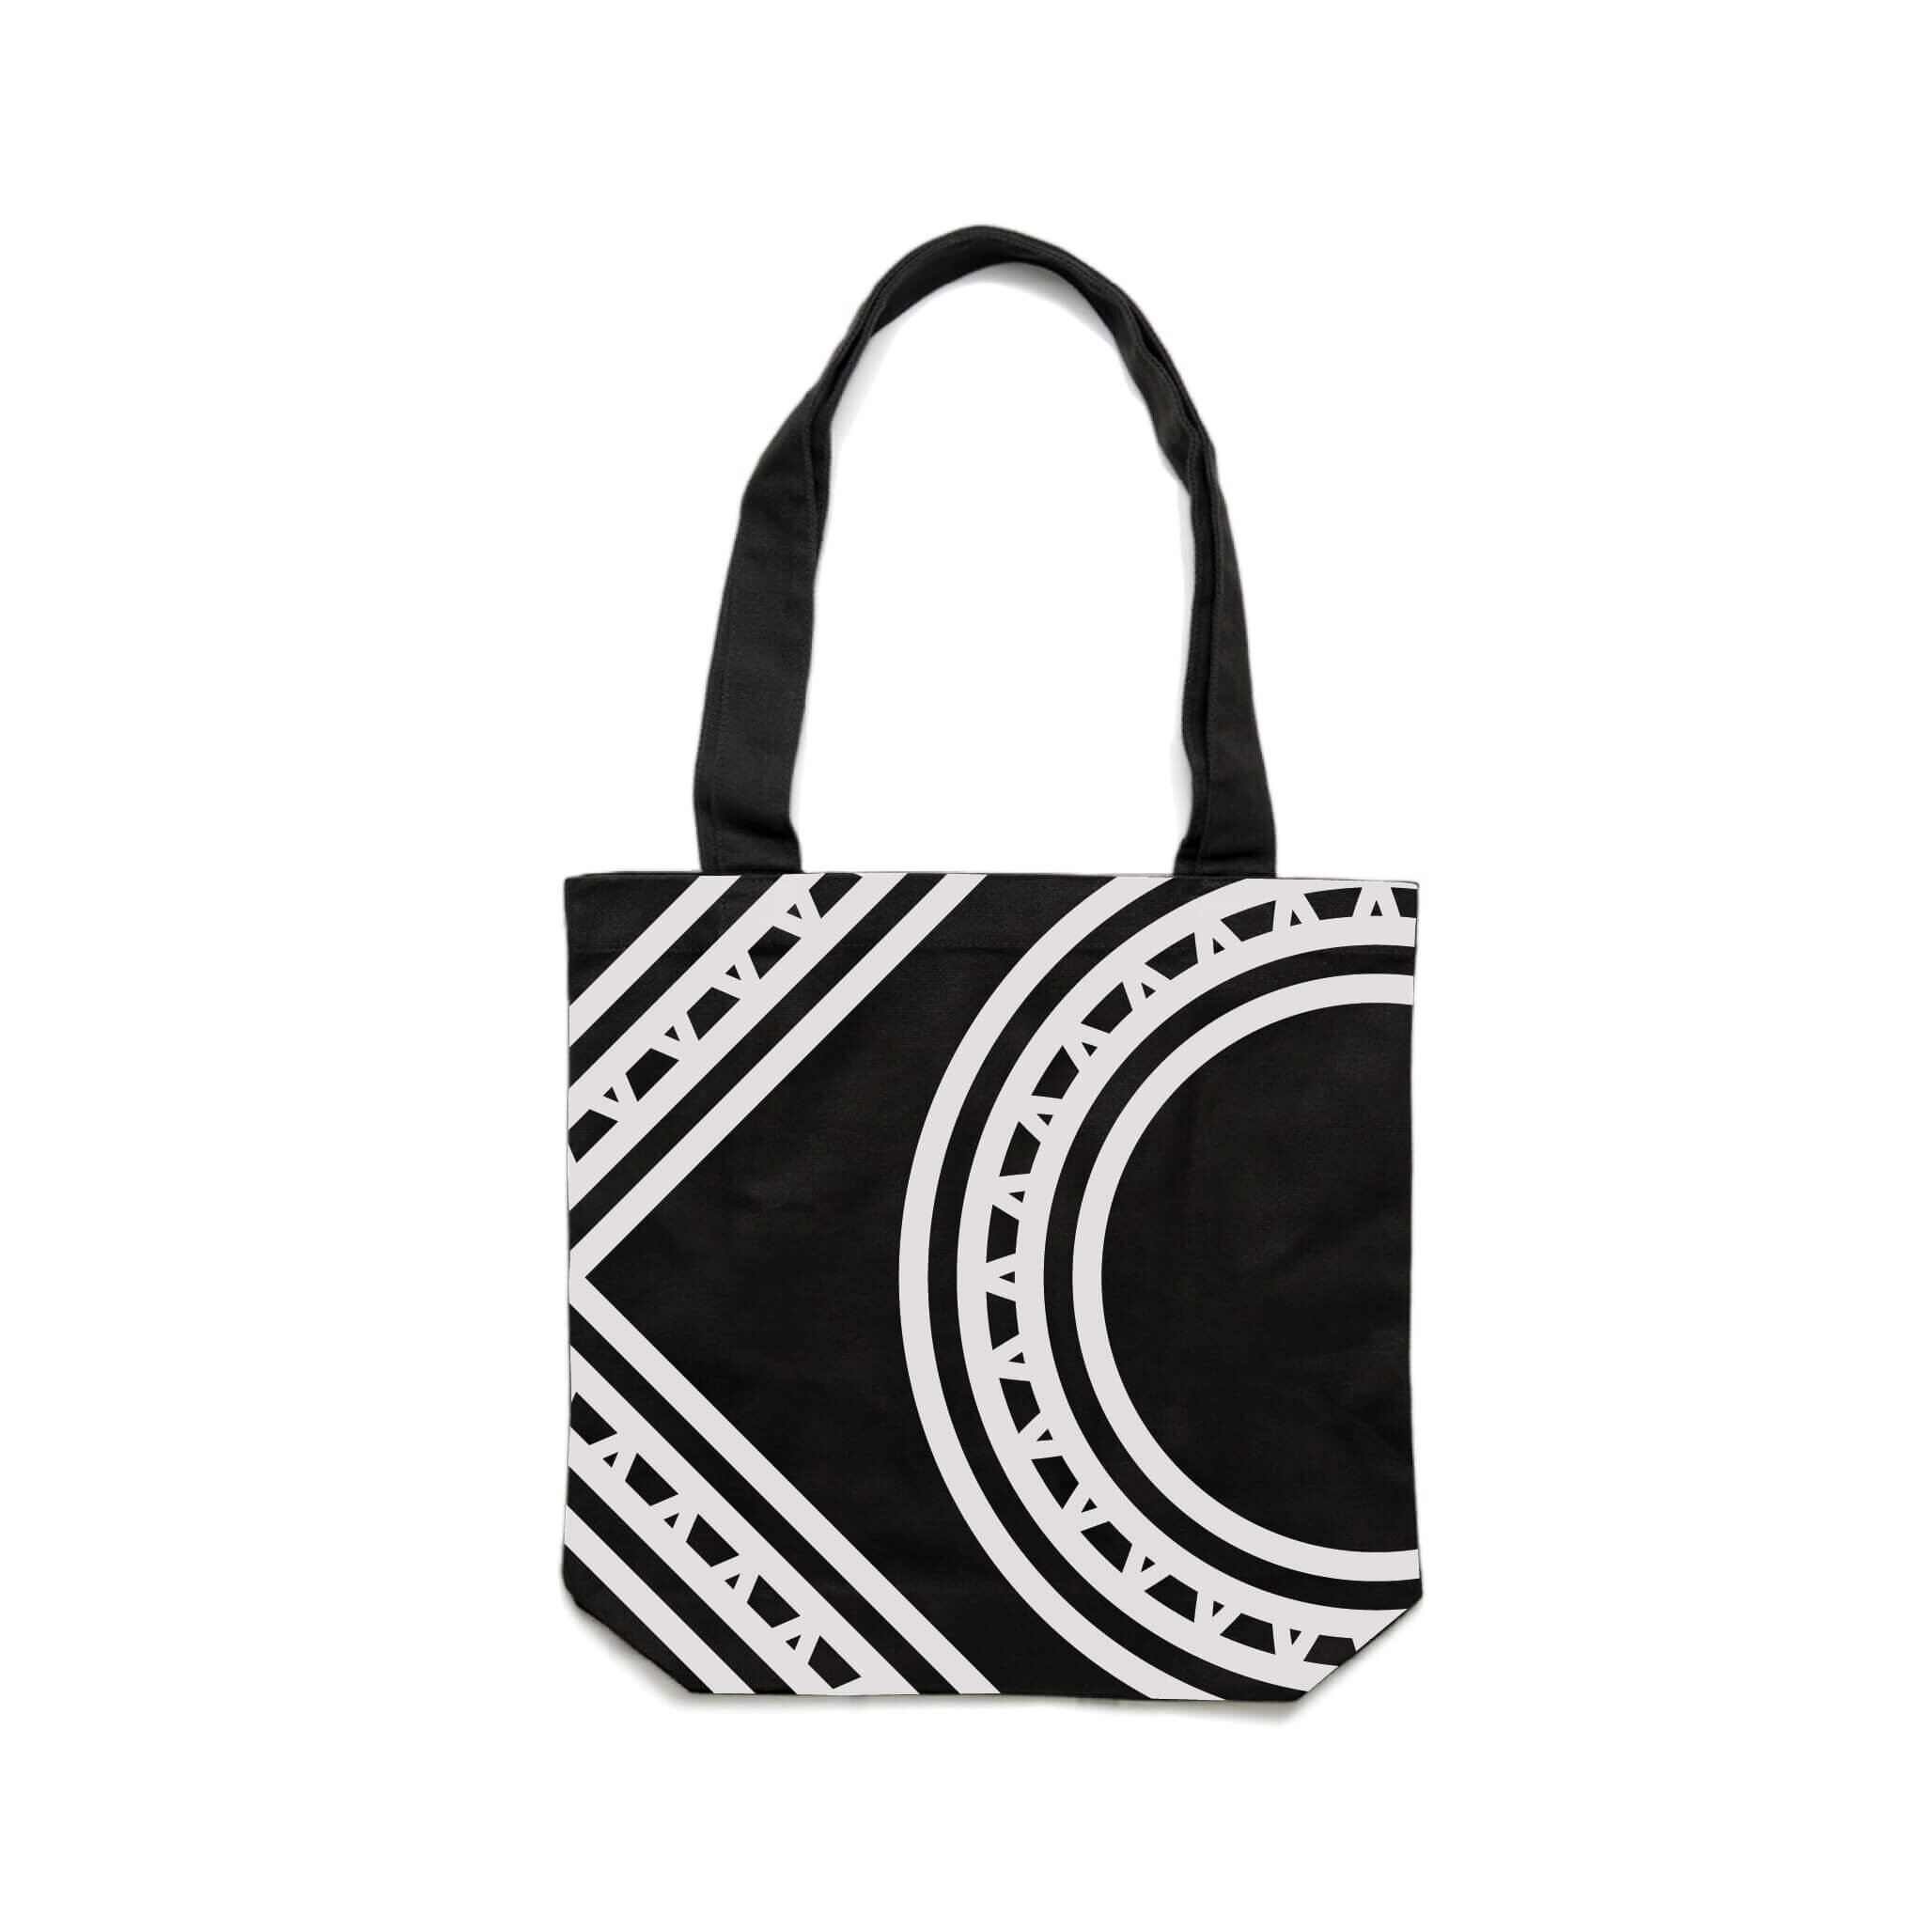 Women's Tote - G Bag Black – QUEEN & GRACE